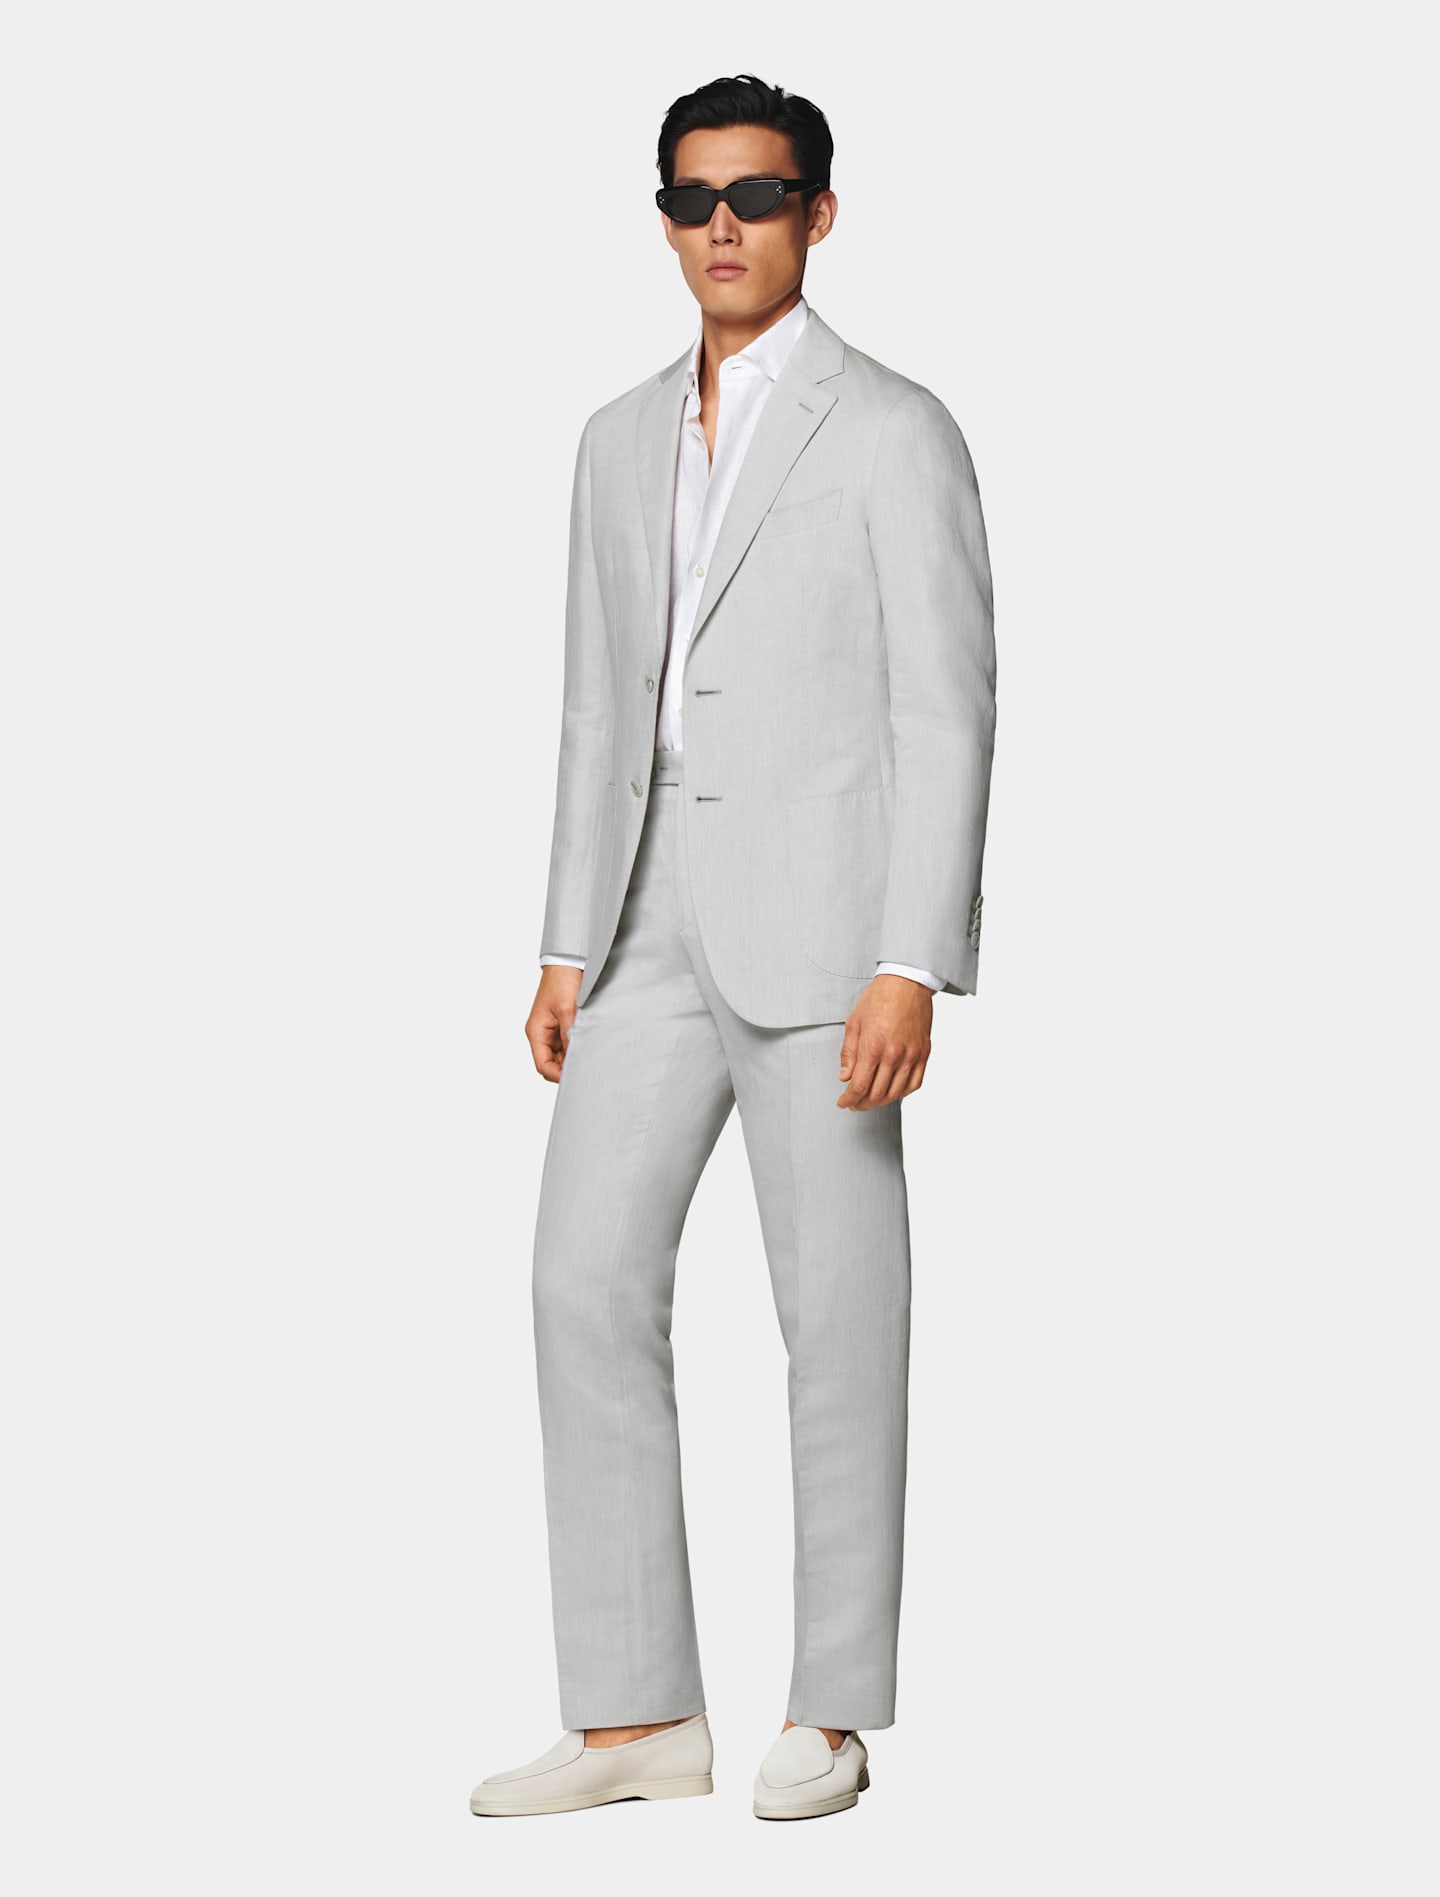 Blazer gris claro de corte sencillo combinado con una camisa blanca desabotonada en el pecho y mocasines gris topo claro.